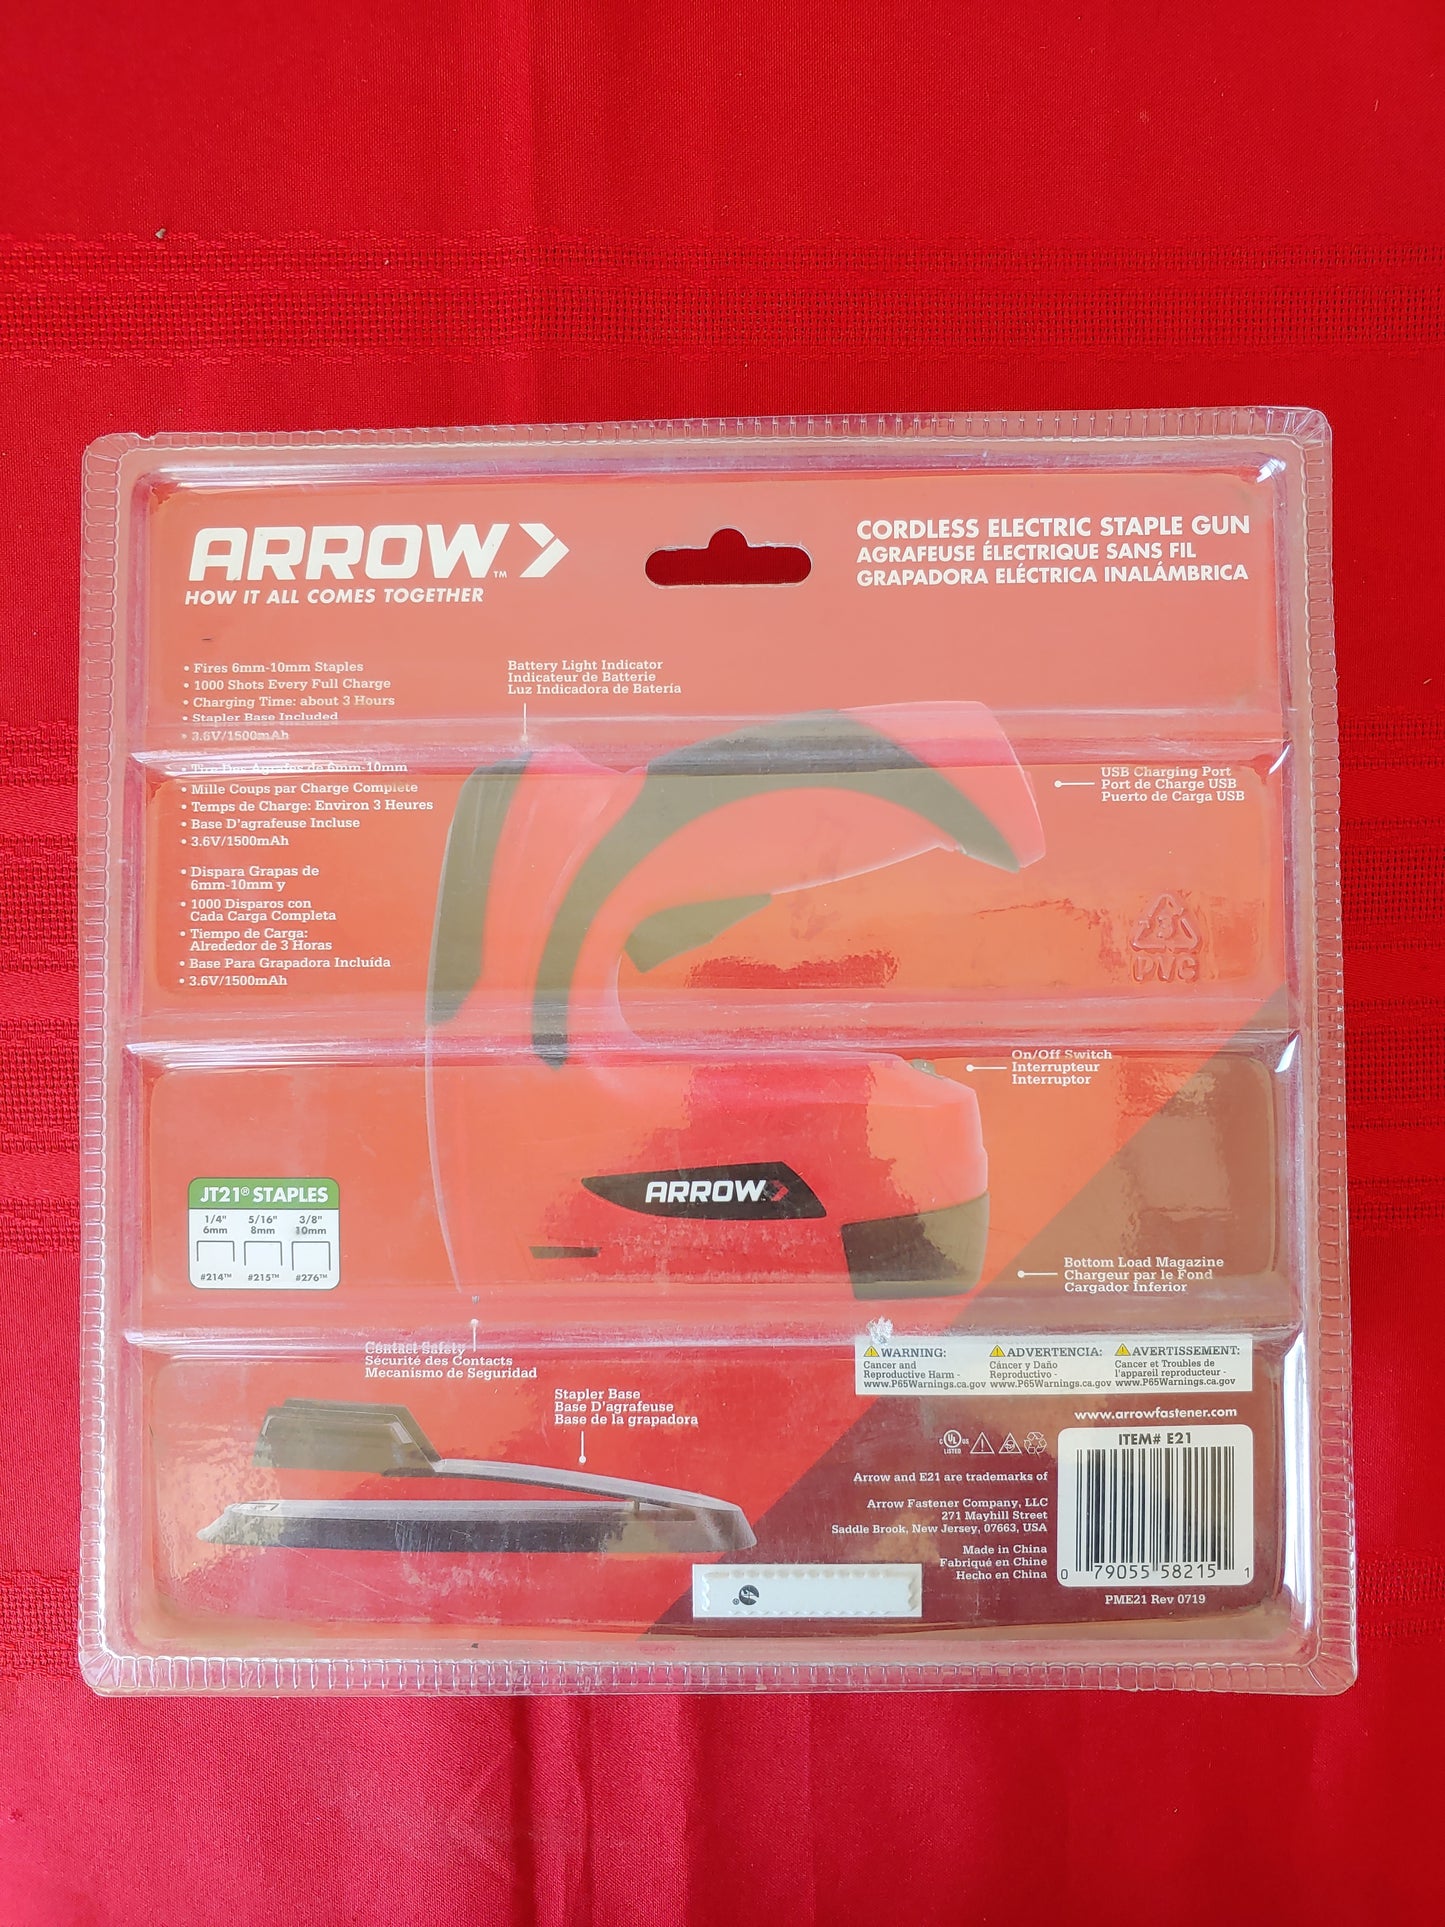 Engrapadora eléctrica inalámbrica de batería - Arrow (Nuevo, caja abierta)